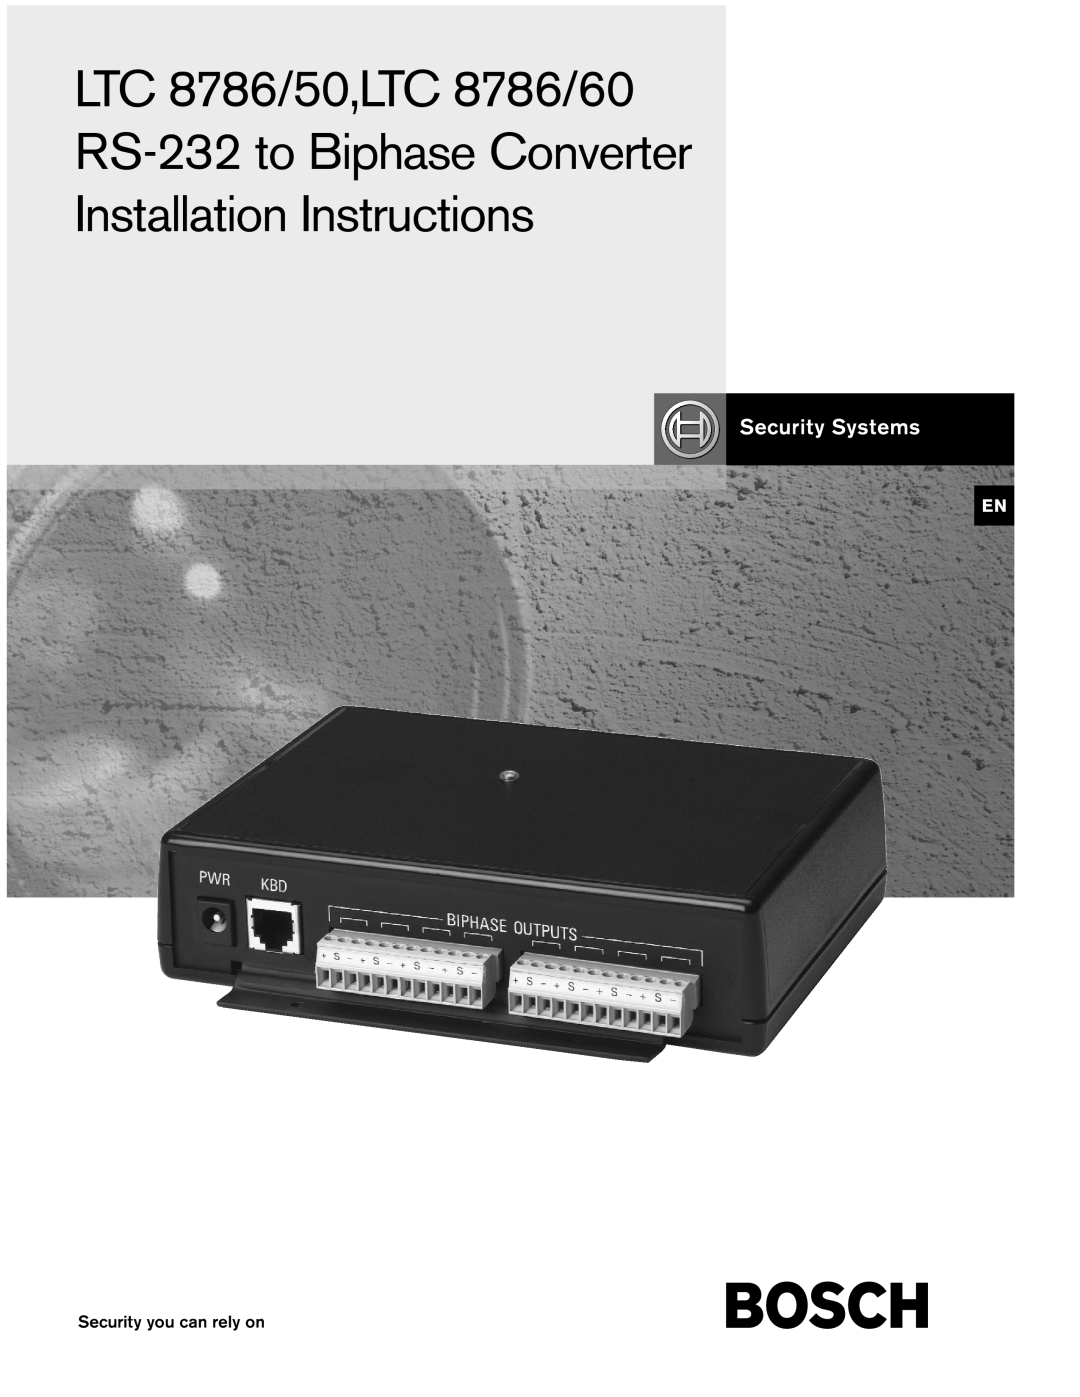 Bosch Appliances LTC8786/60, LTC8786/50 installation instructions LTC 8786/50,LTC 8786/60 RS-232 to Biphase Converter 